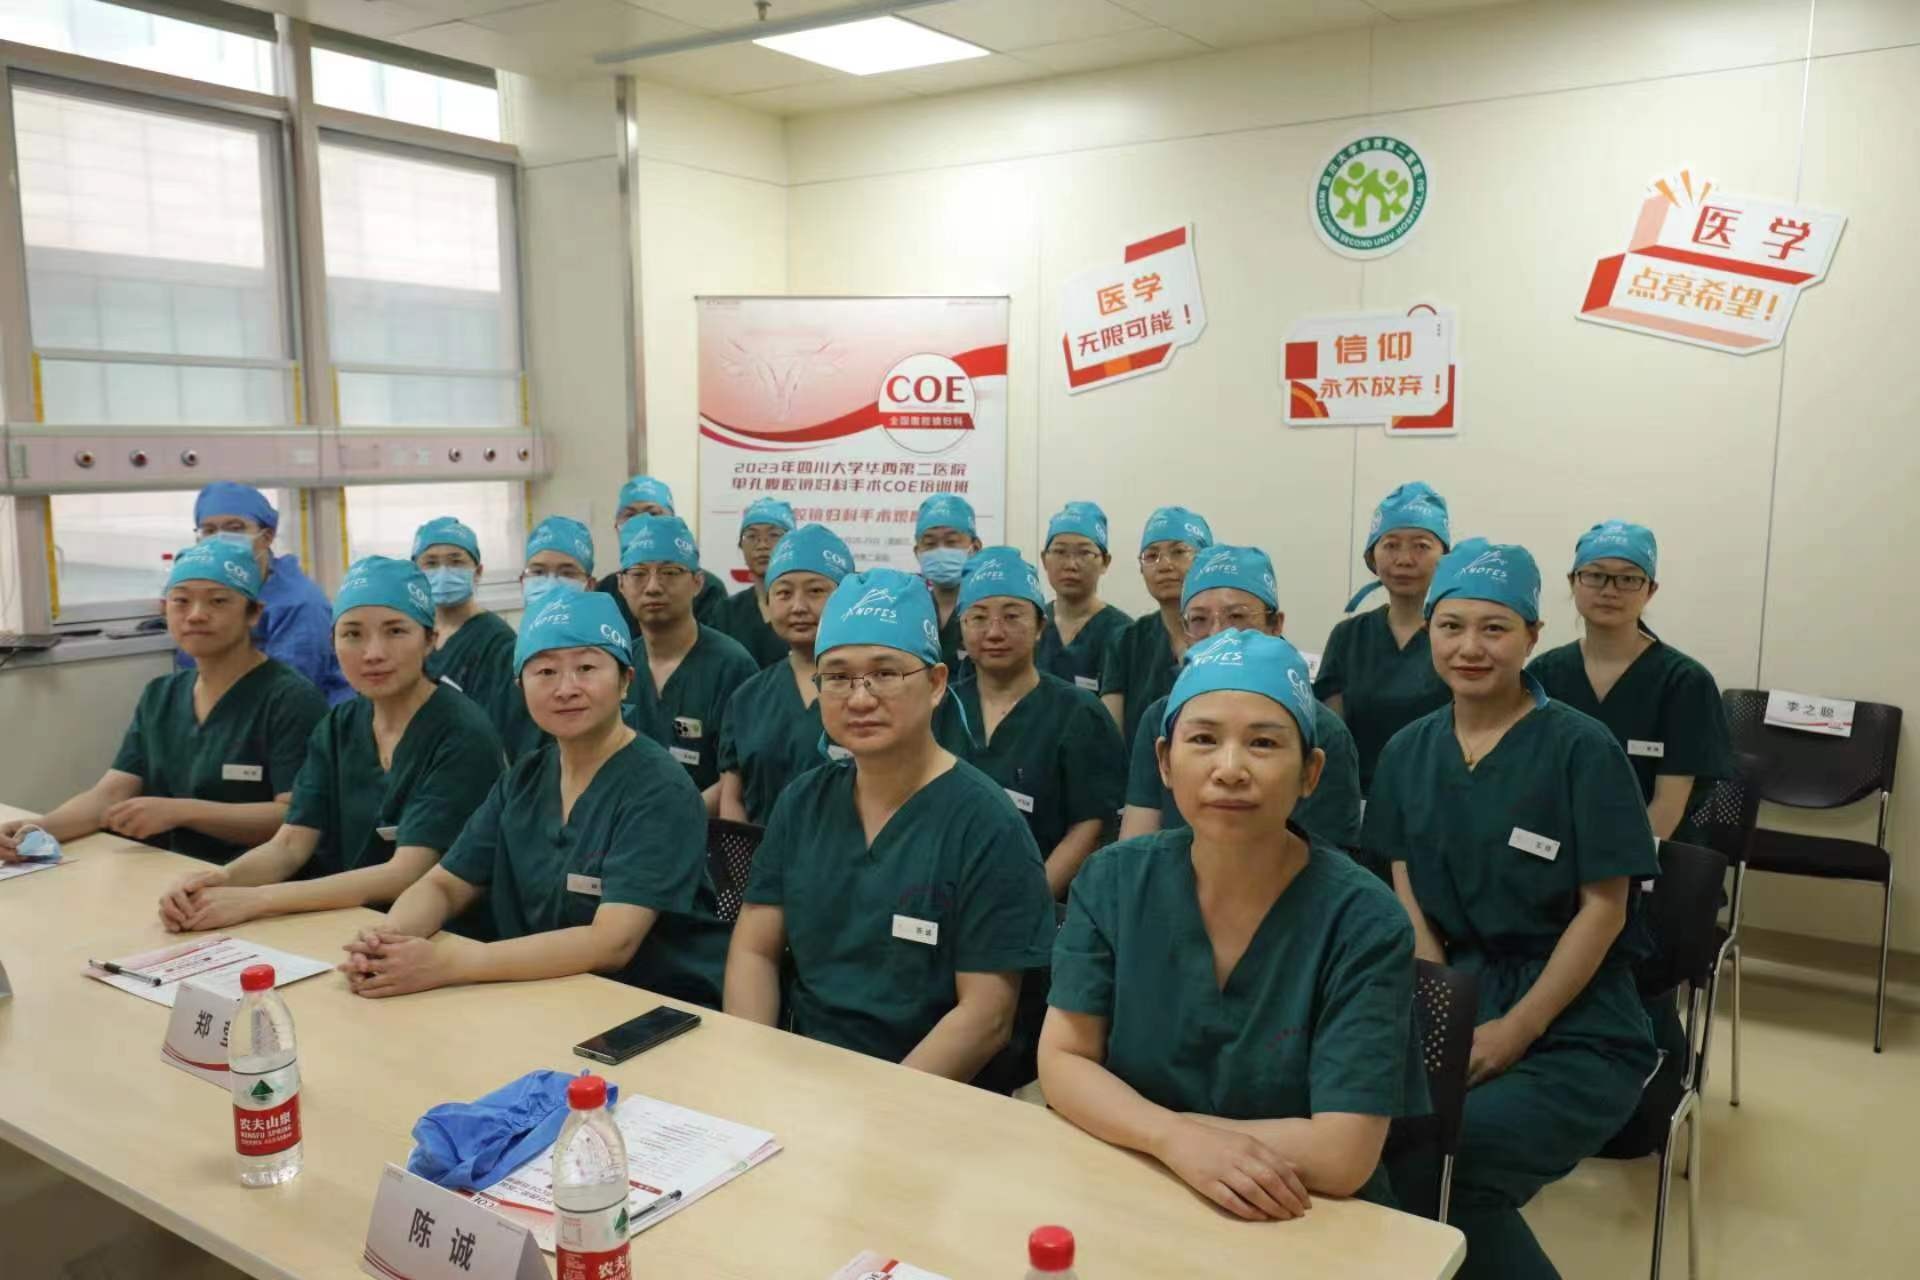 “2023年四川大学华西第二医院单孔腹腔镜妇科手术COE培训班”
之手术观摩取得圆满成功